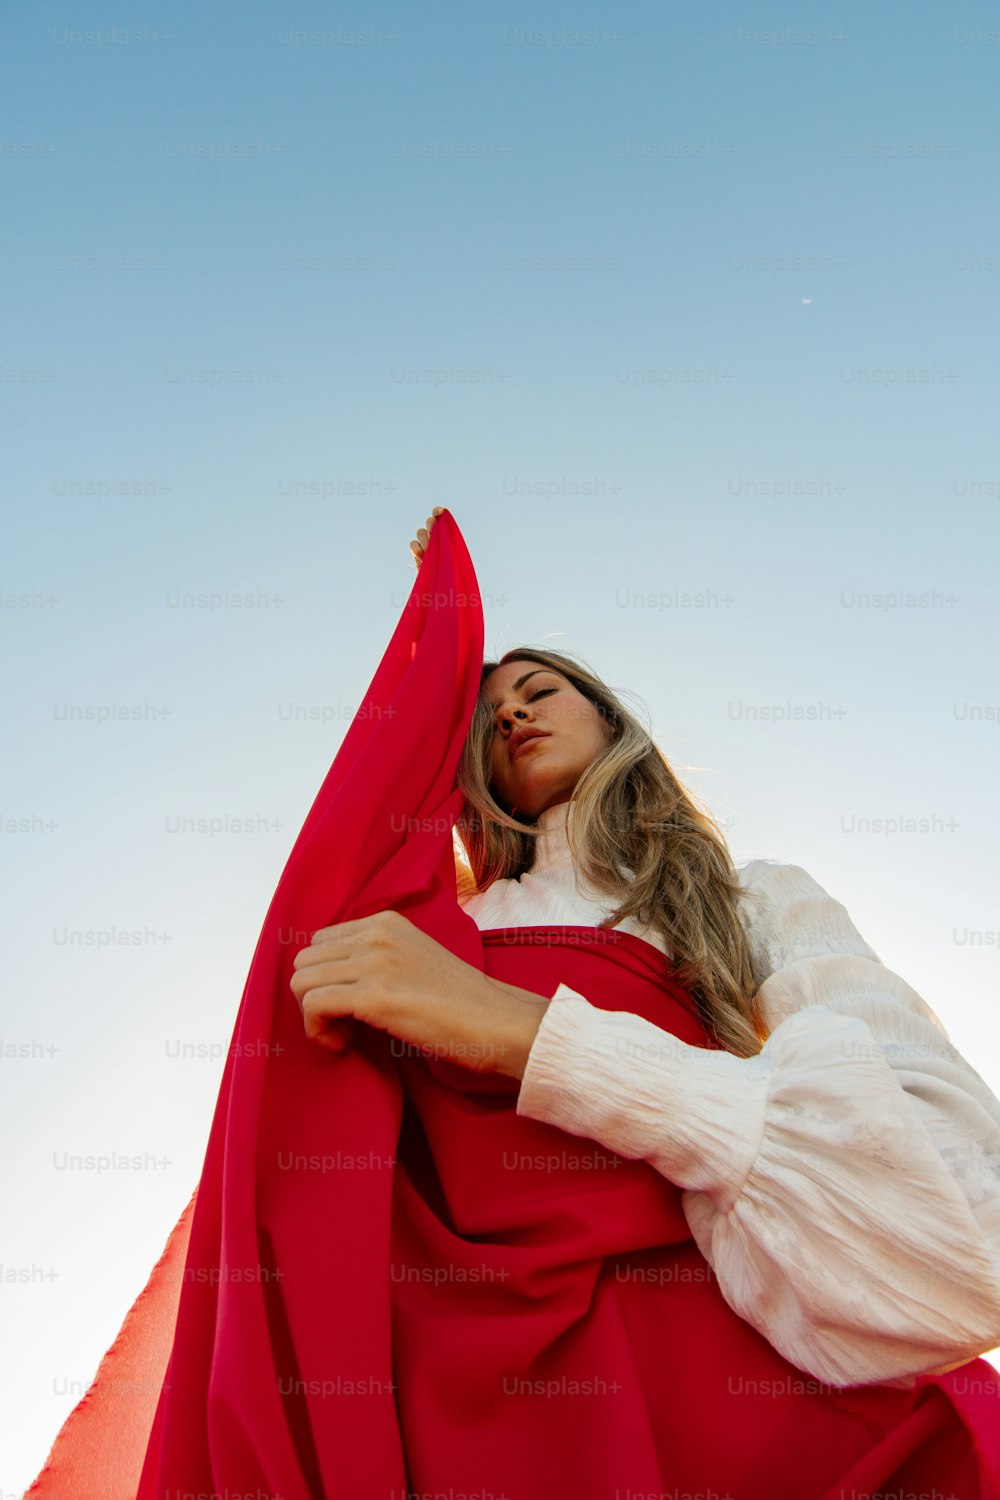 Uma mulher com um manto vermelho está posando para uma foto